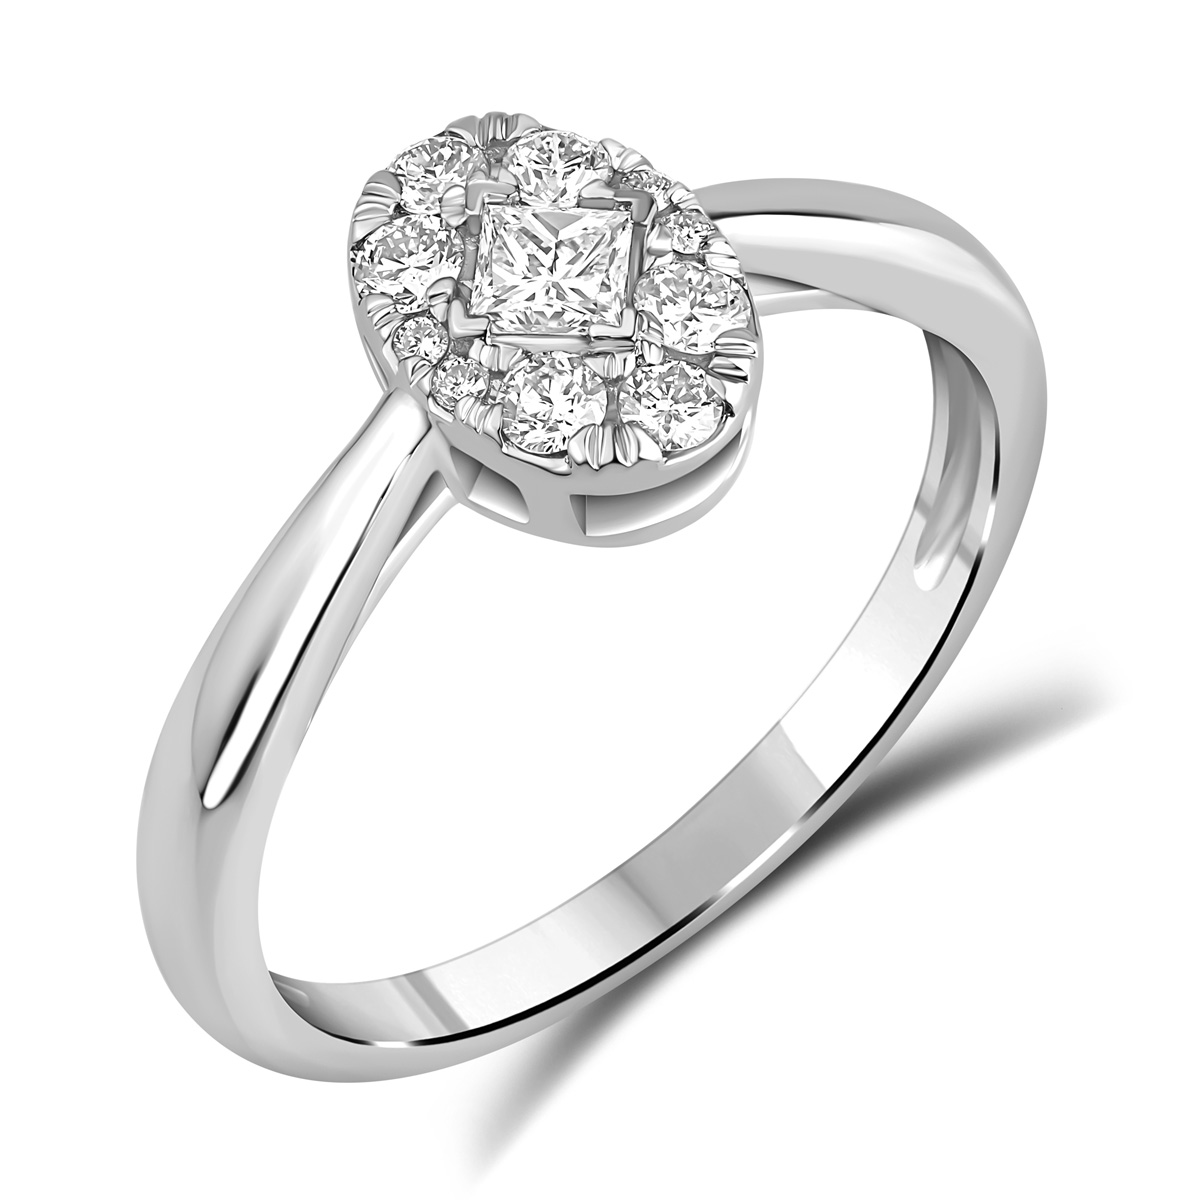 HE53114QWD4WN
14K White Gold princess  cut diamond ring